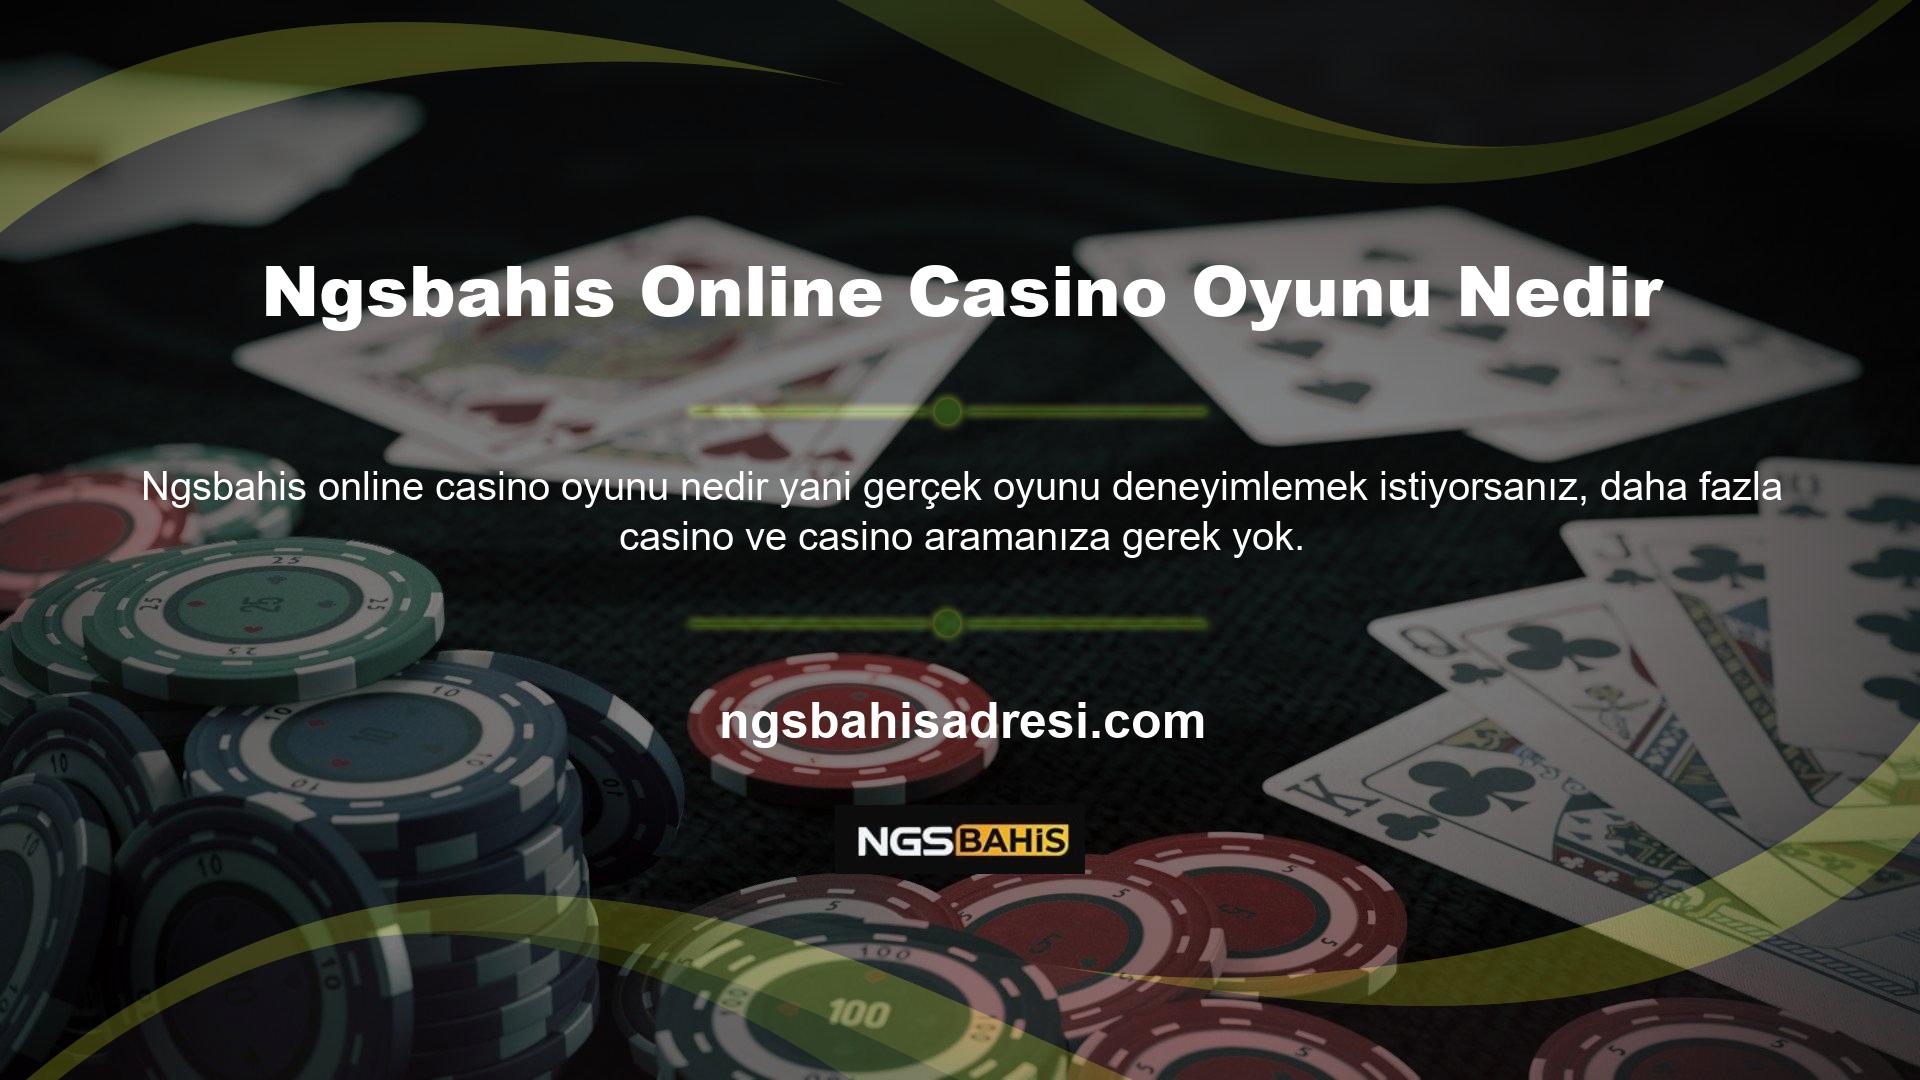 Ngsbahis casinoları ülkemizde halen yasaklı olduğu için bu hizmet sadece yurt dışında lisanslı firmalarda bulunabilmektedir